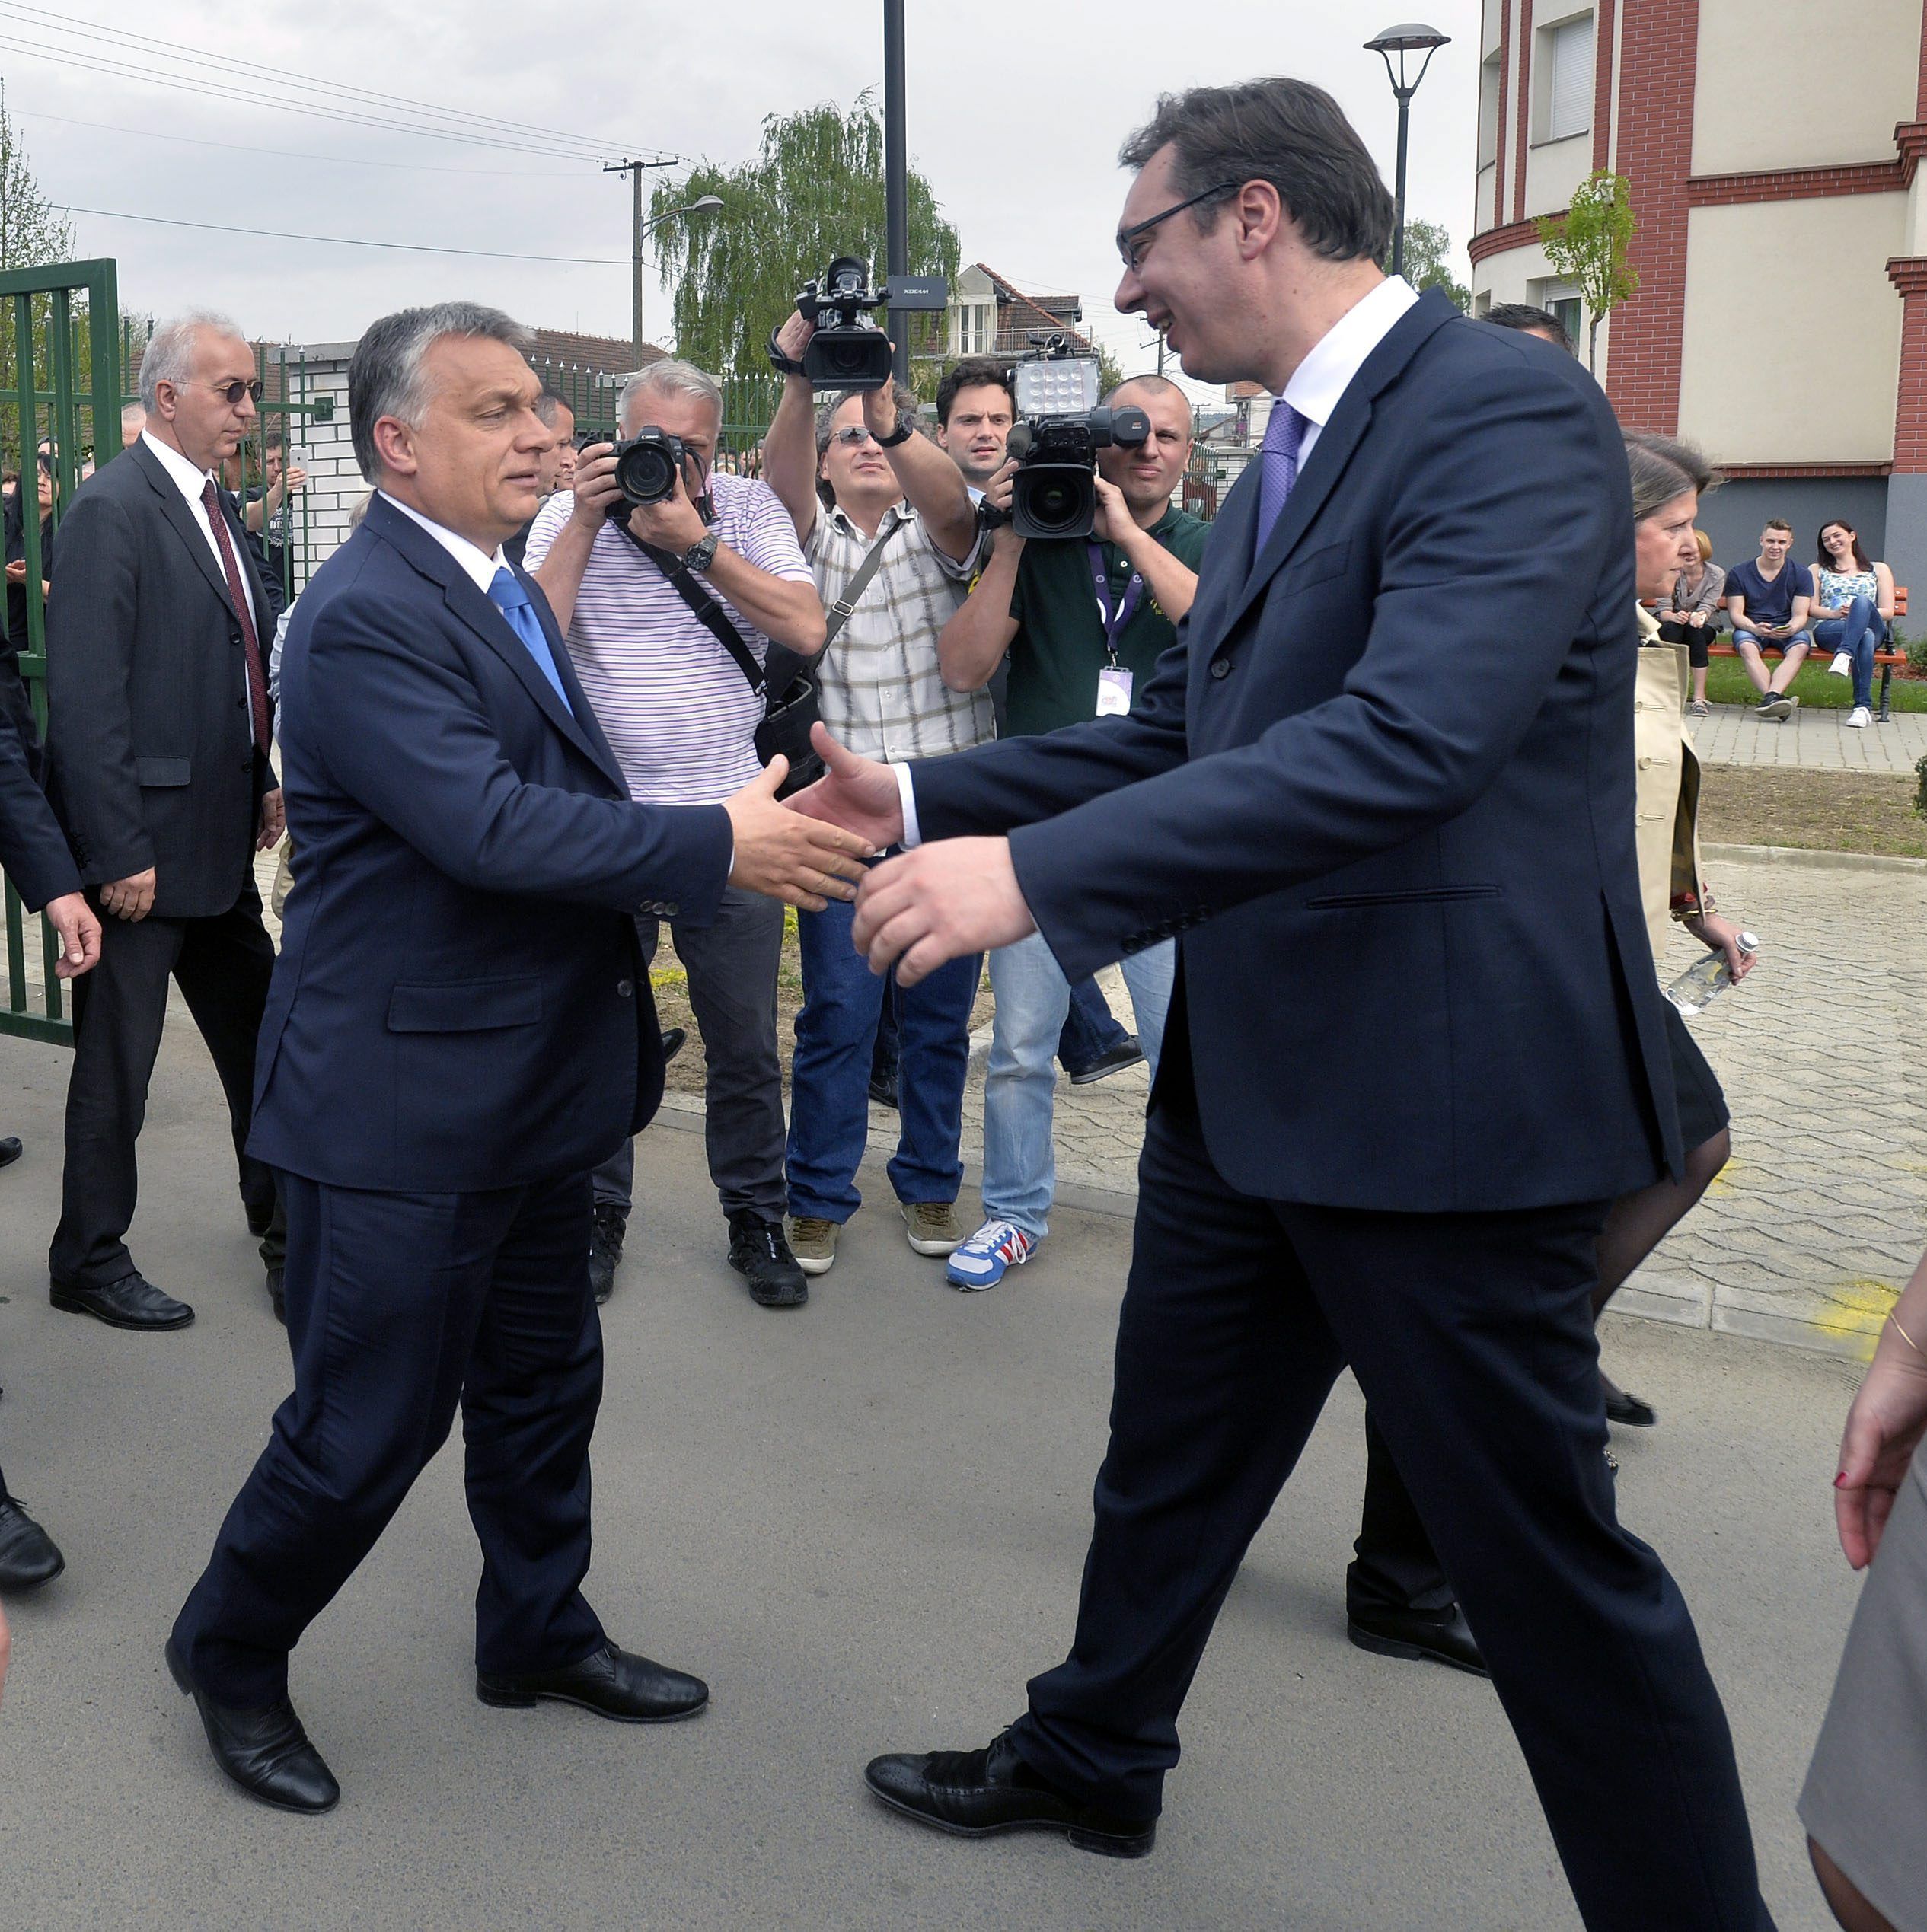 Orbán elment kezet fogni Újvidékre